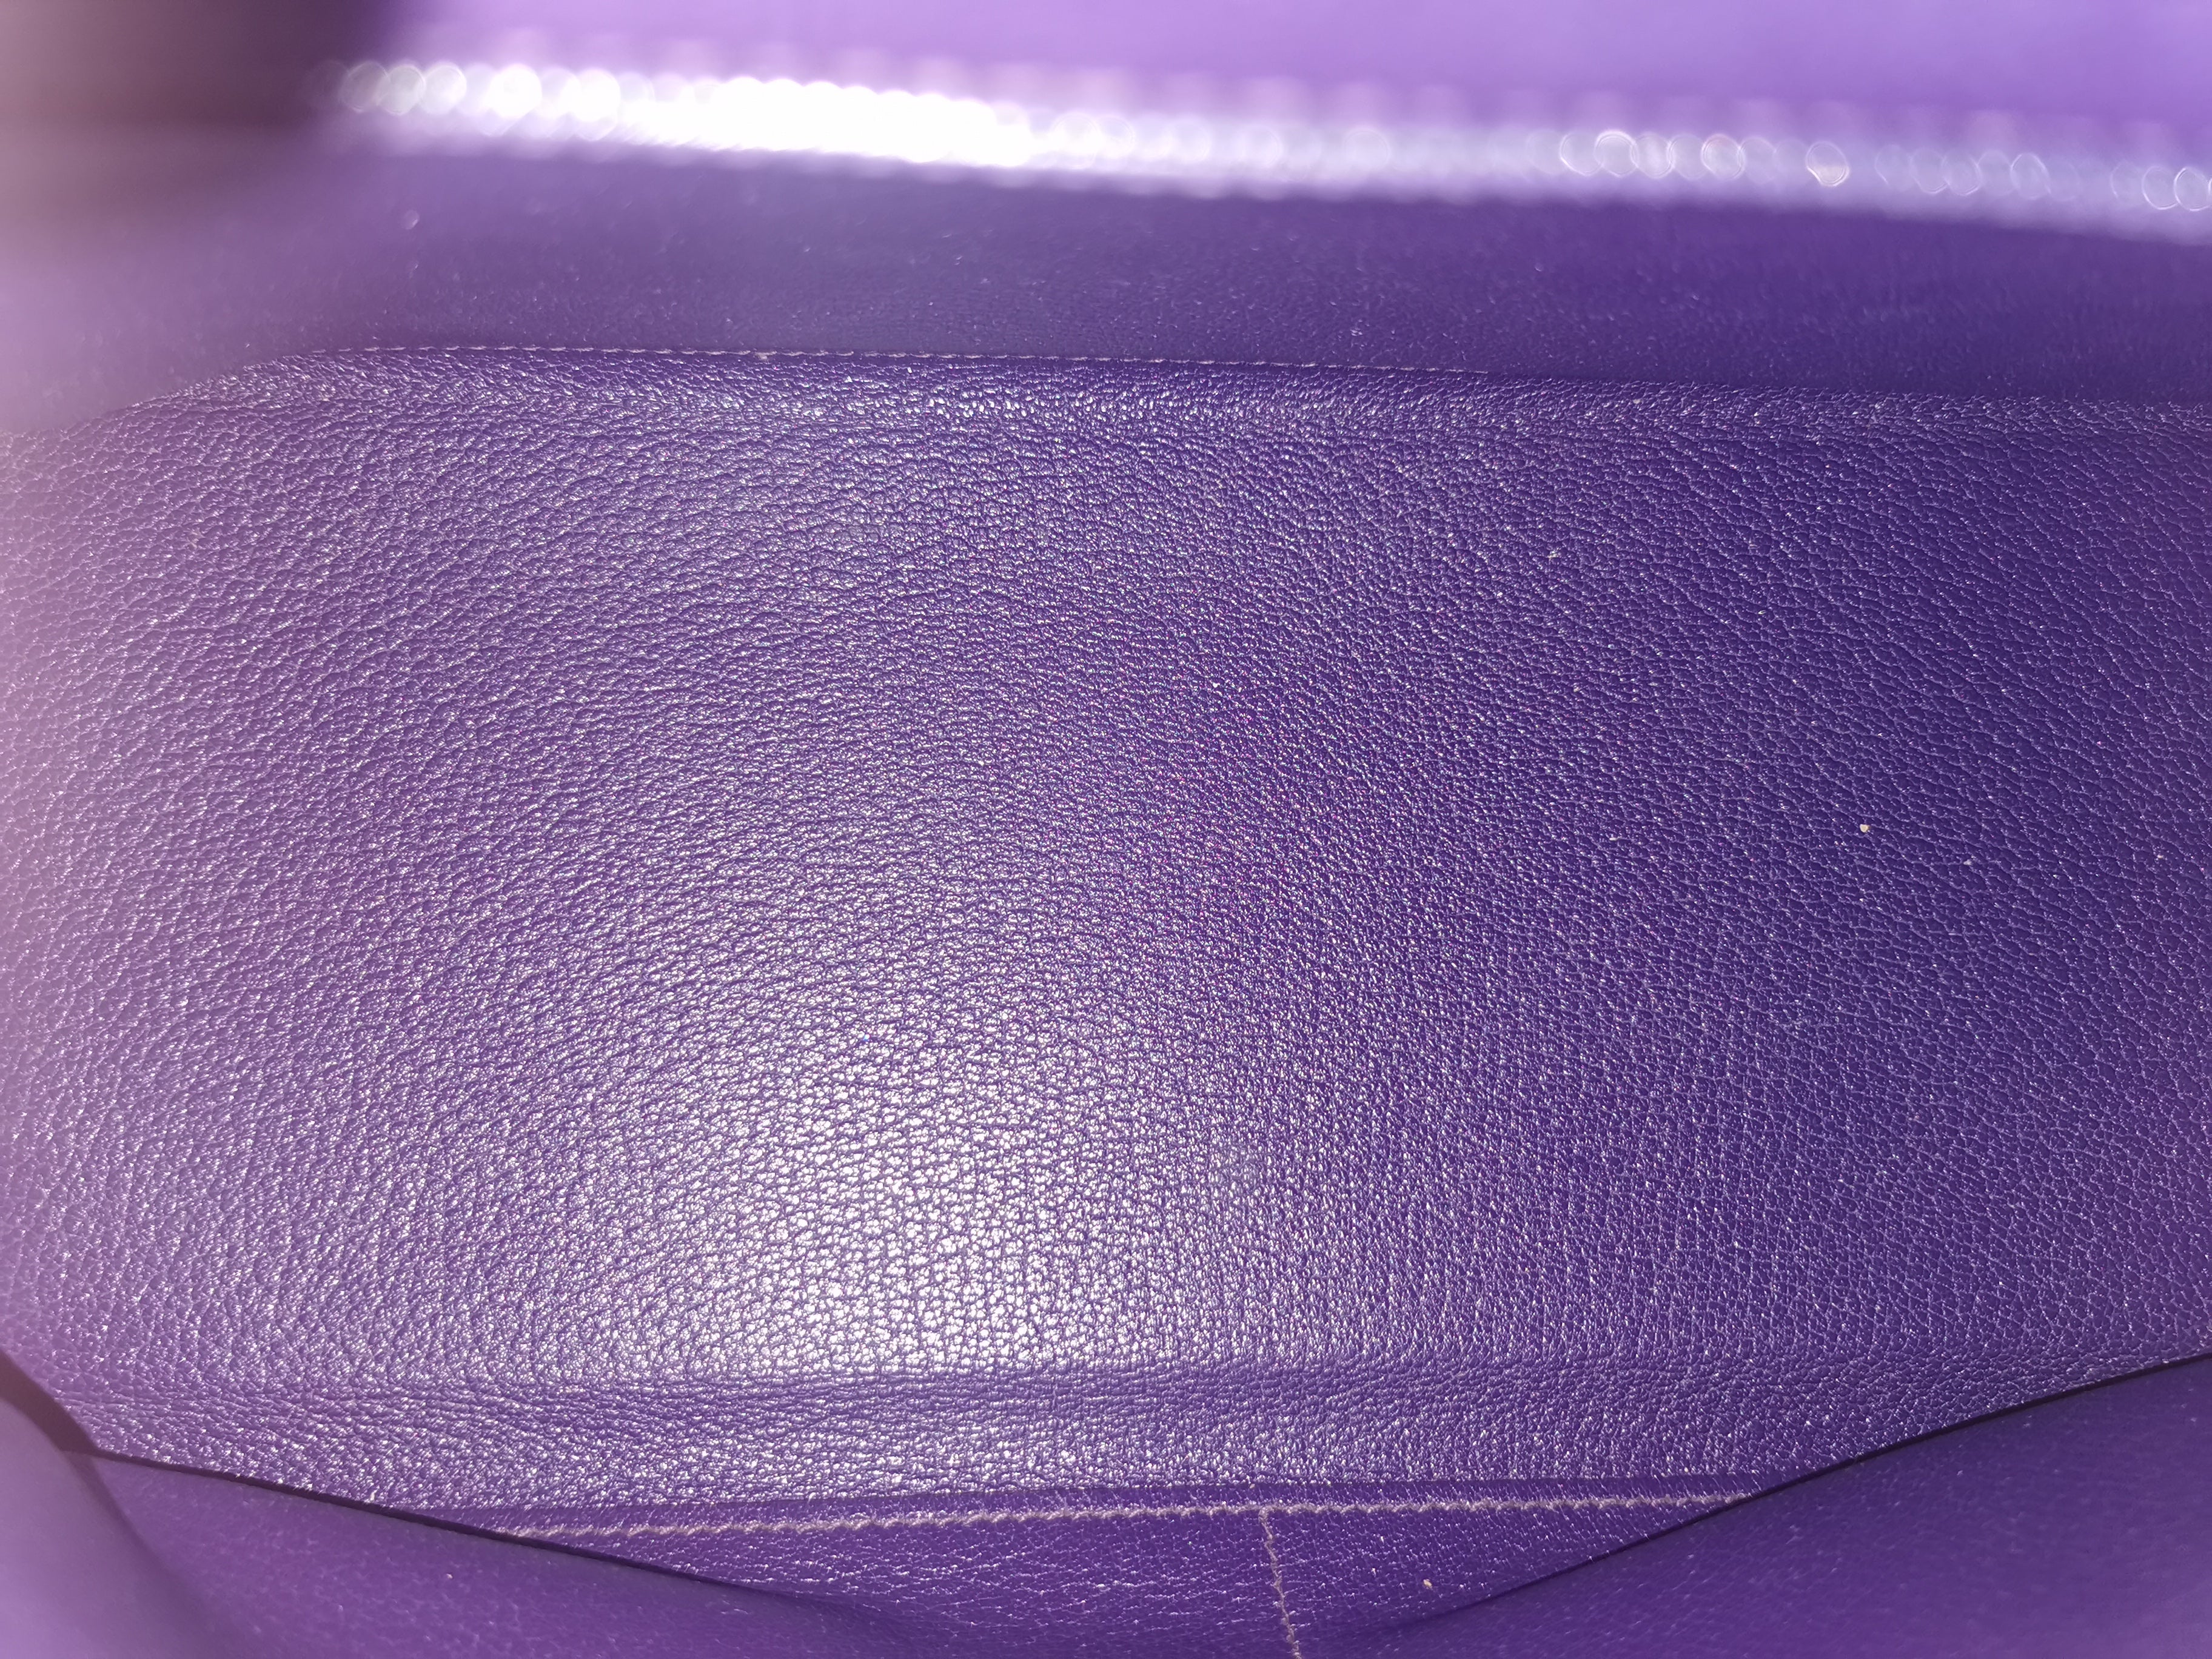 Hermès Kelly 35 Purple Epsom Palladium